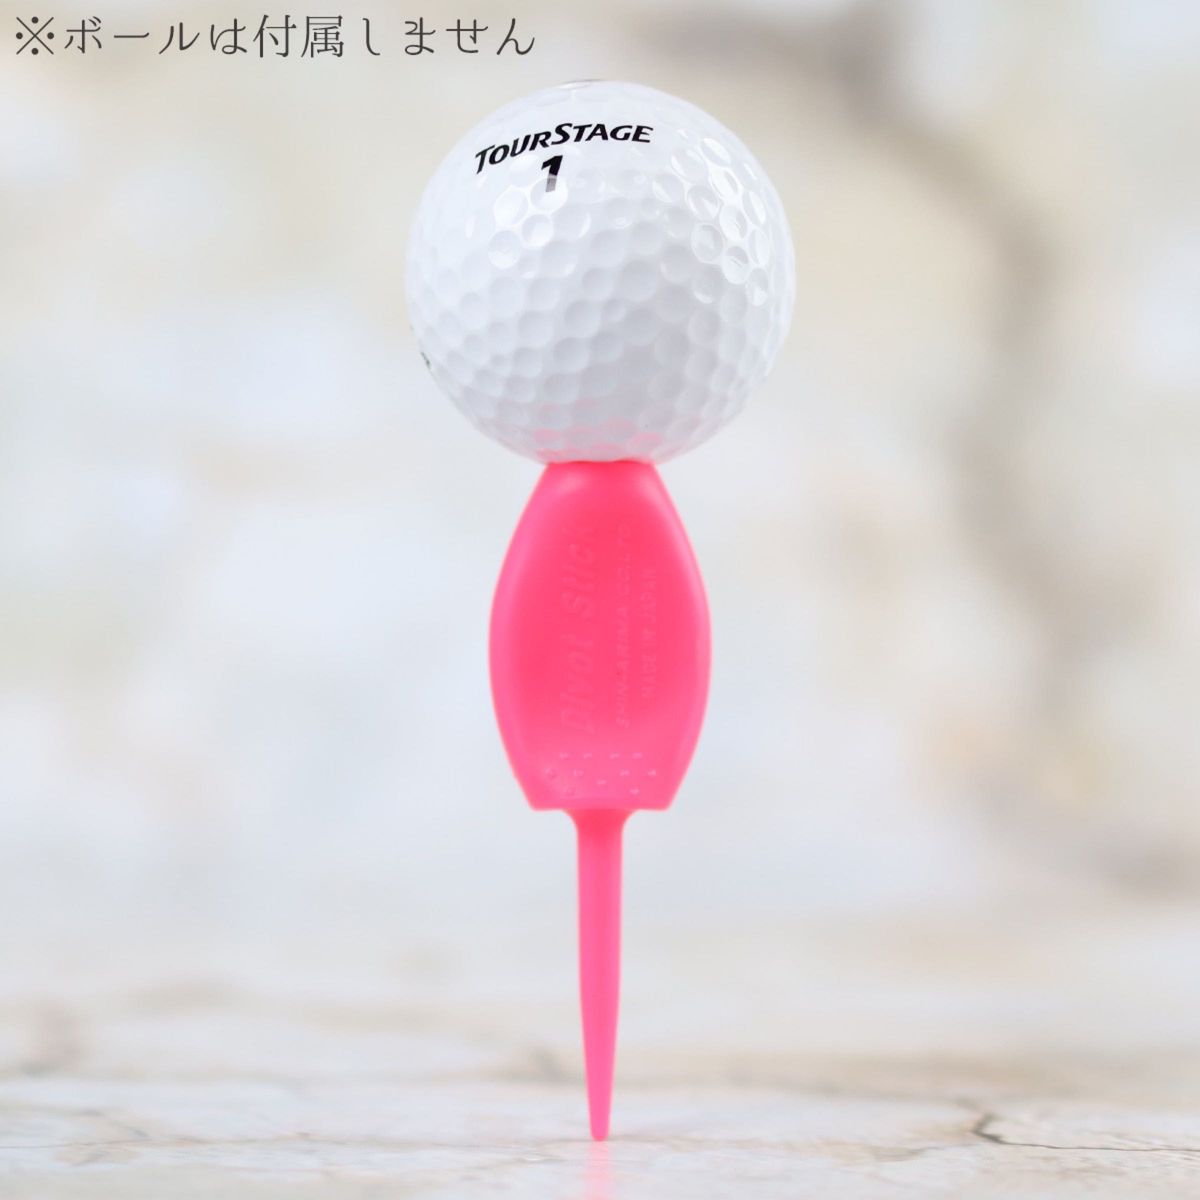 8本セット パリティー 蛍光色 ピンク色 ゴルフボール 跡 マーク ゴルフティー ティーペグ グリーンフォーク b098p